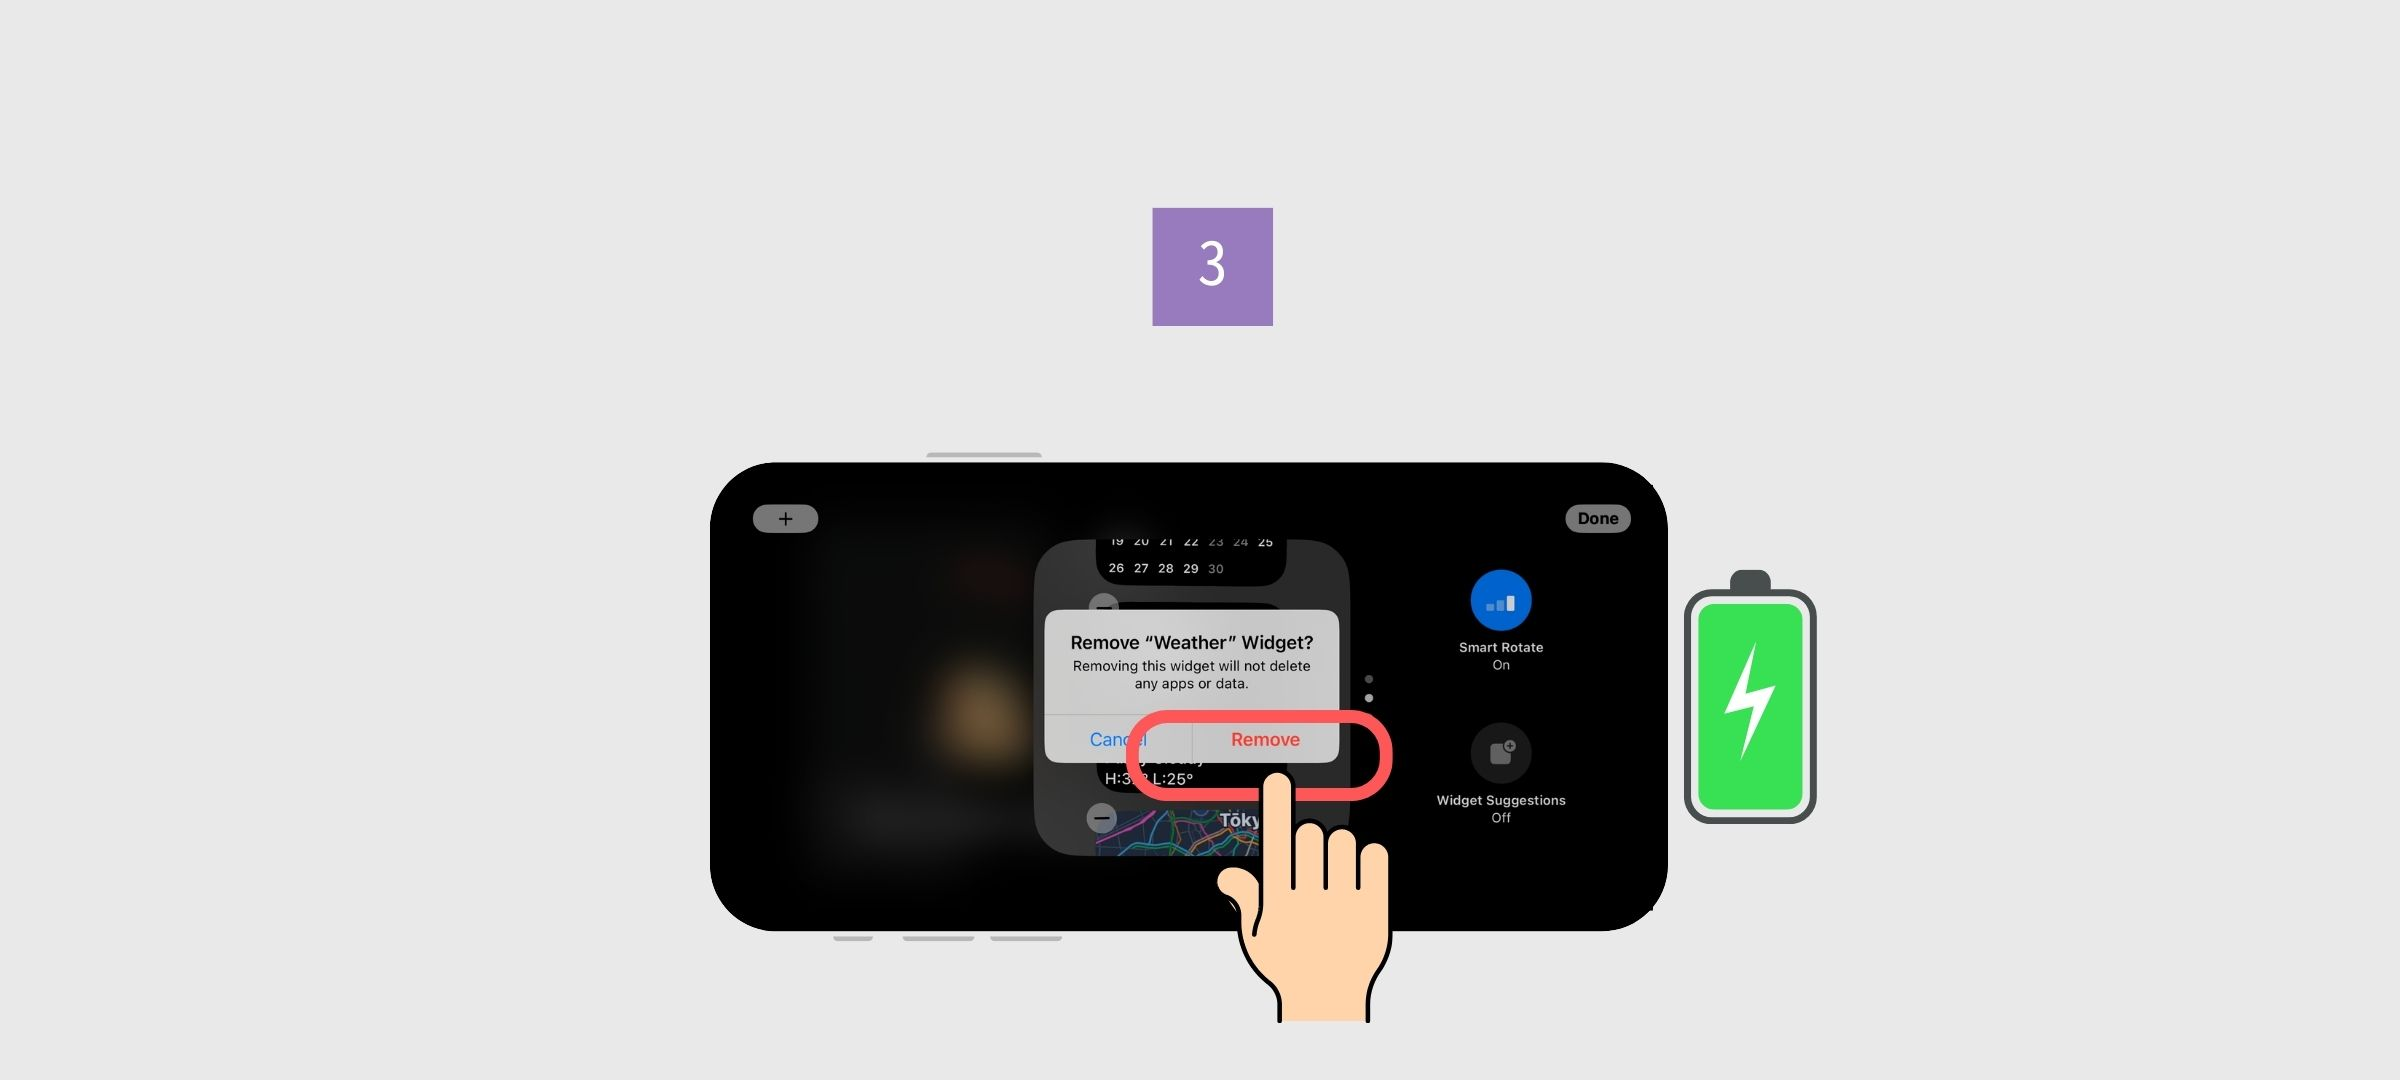 #12 iOS17'de Bekleme Modu nasıl kullanılır görseli